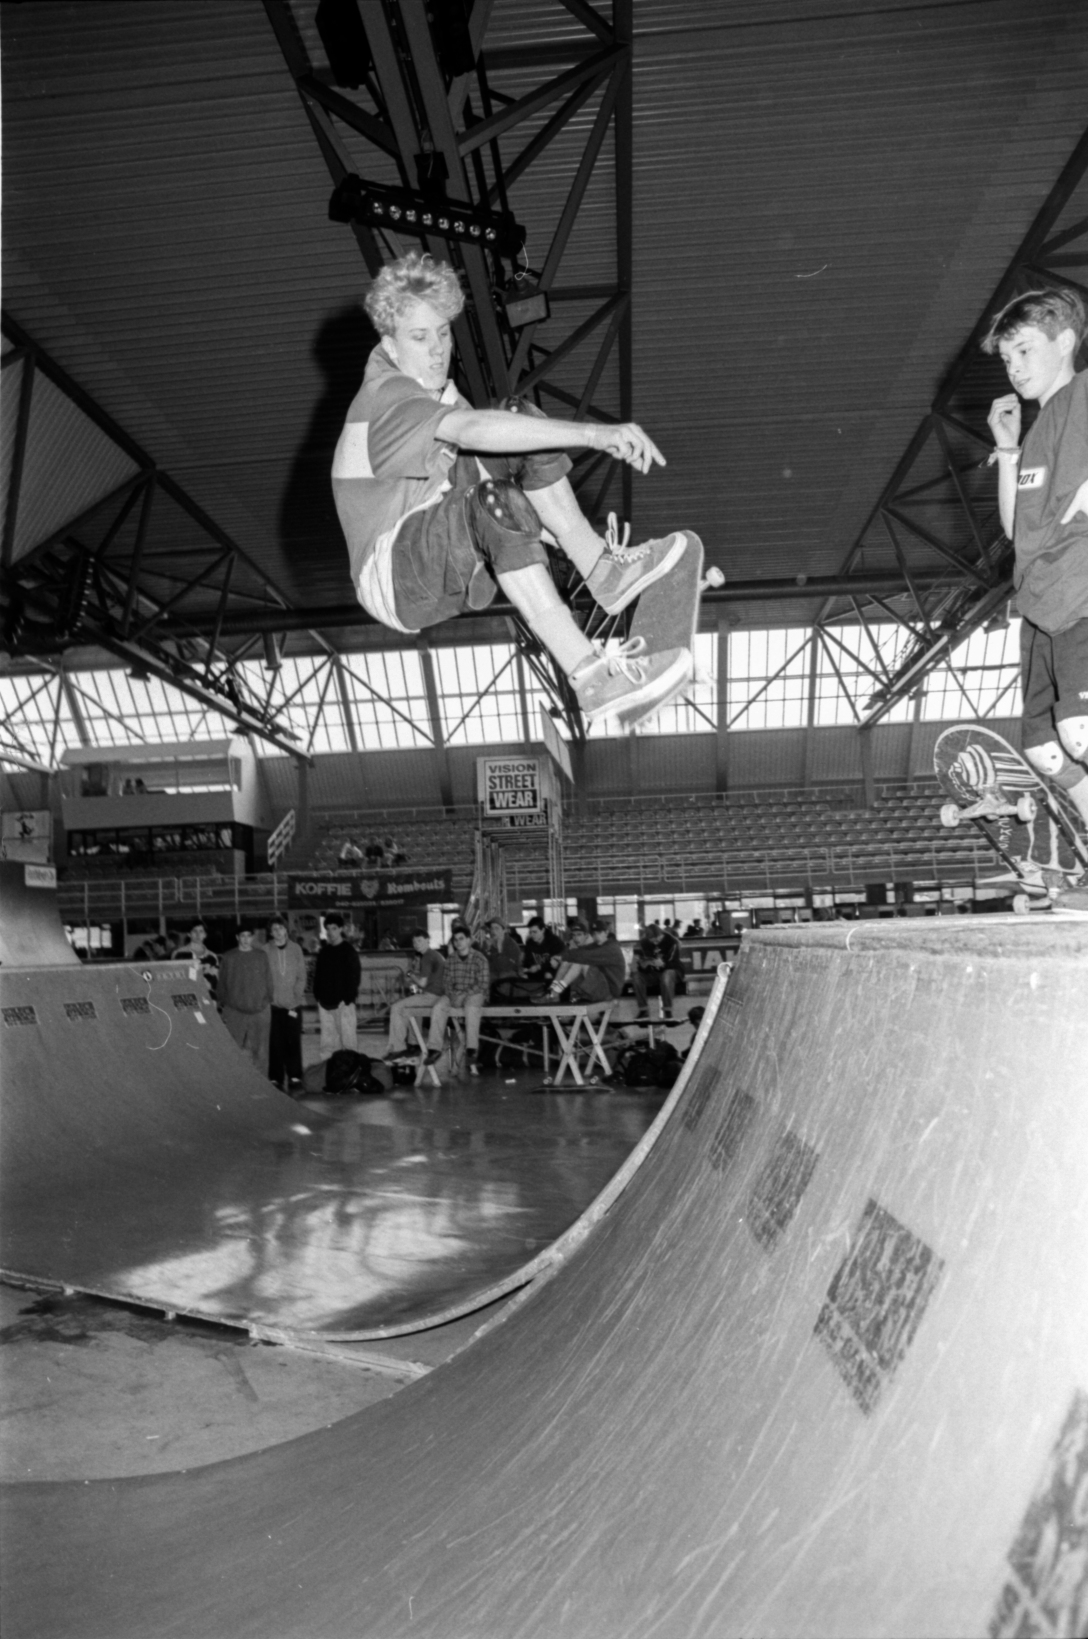 jan-waage-frontside-ollie-eindhoven-skate-comp-holland-1991-photo-kevin-banks-speedway-skateboarding-magazine